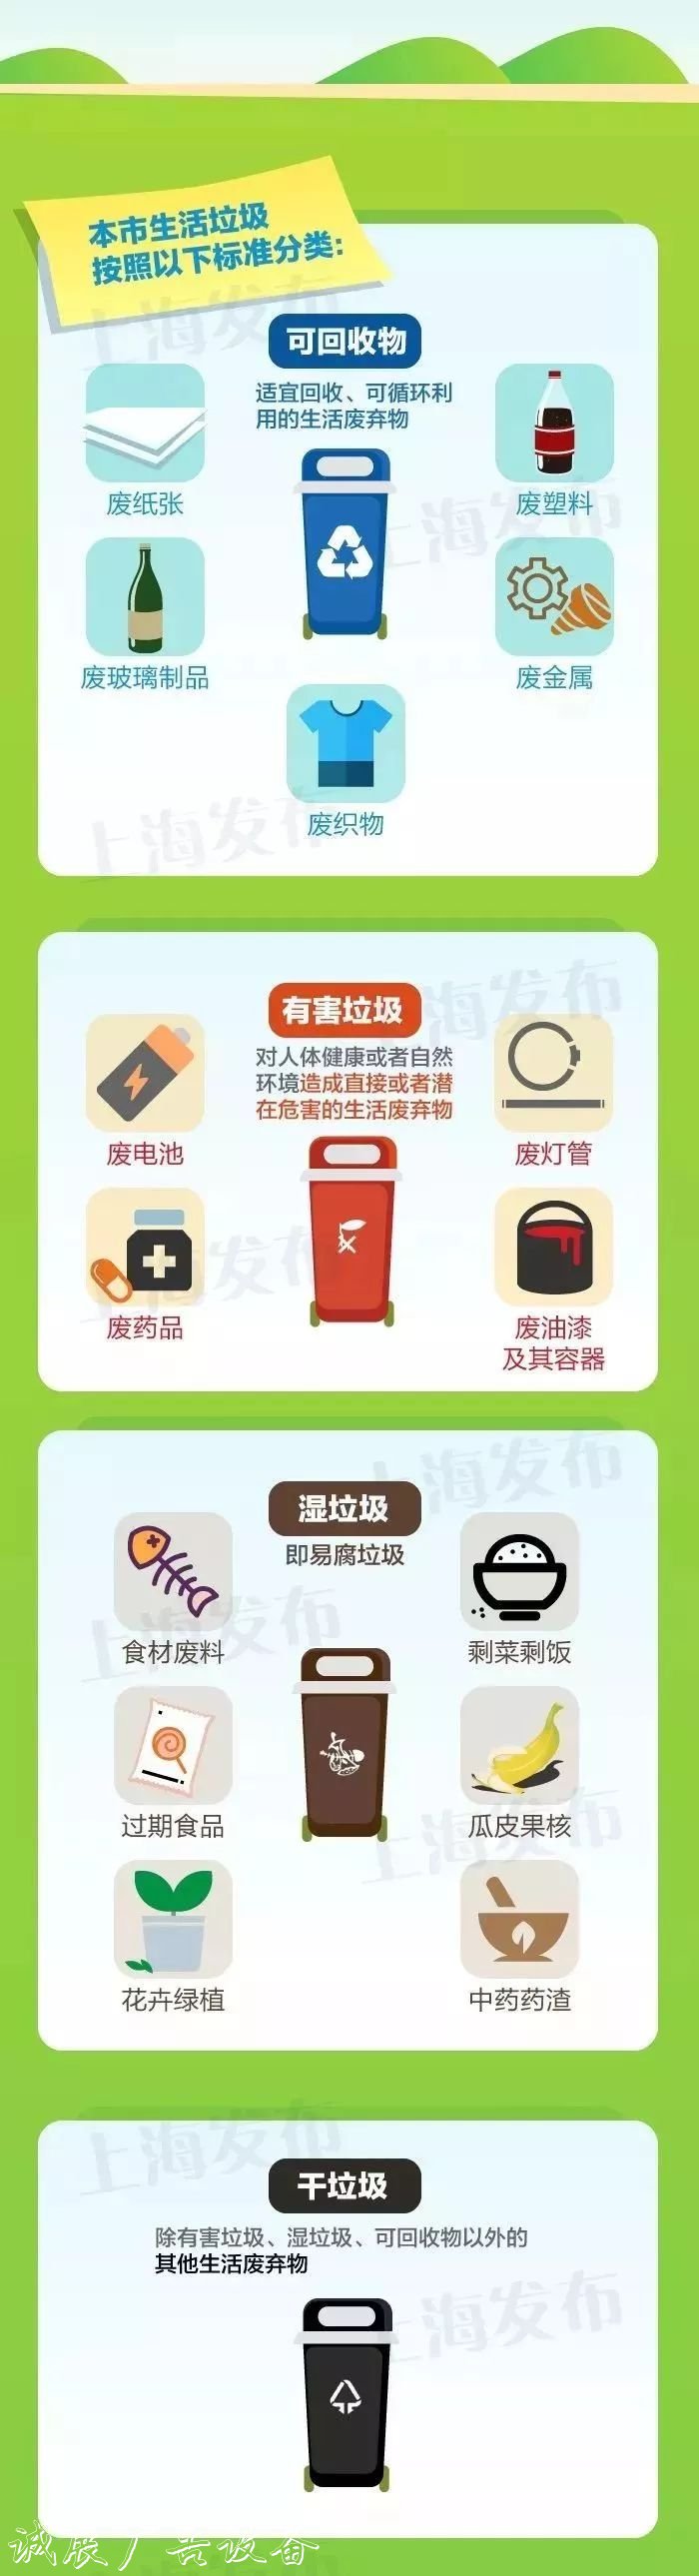 2019上海市生活垃圾指路牌灯箱按照以下标准分类!